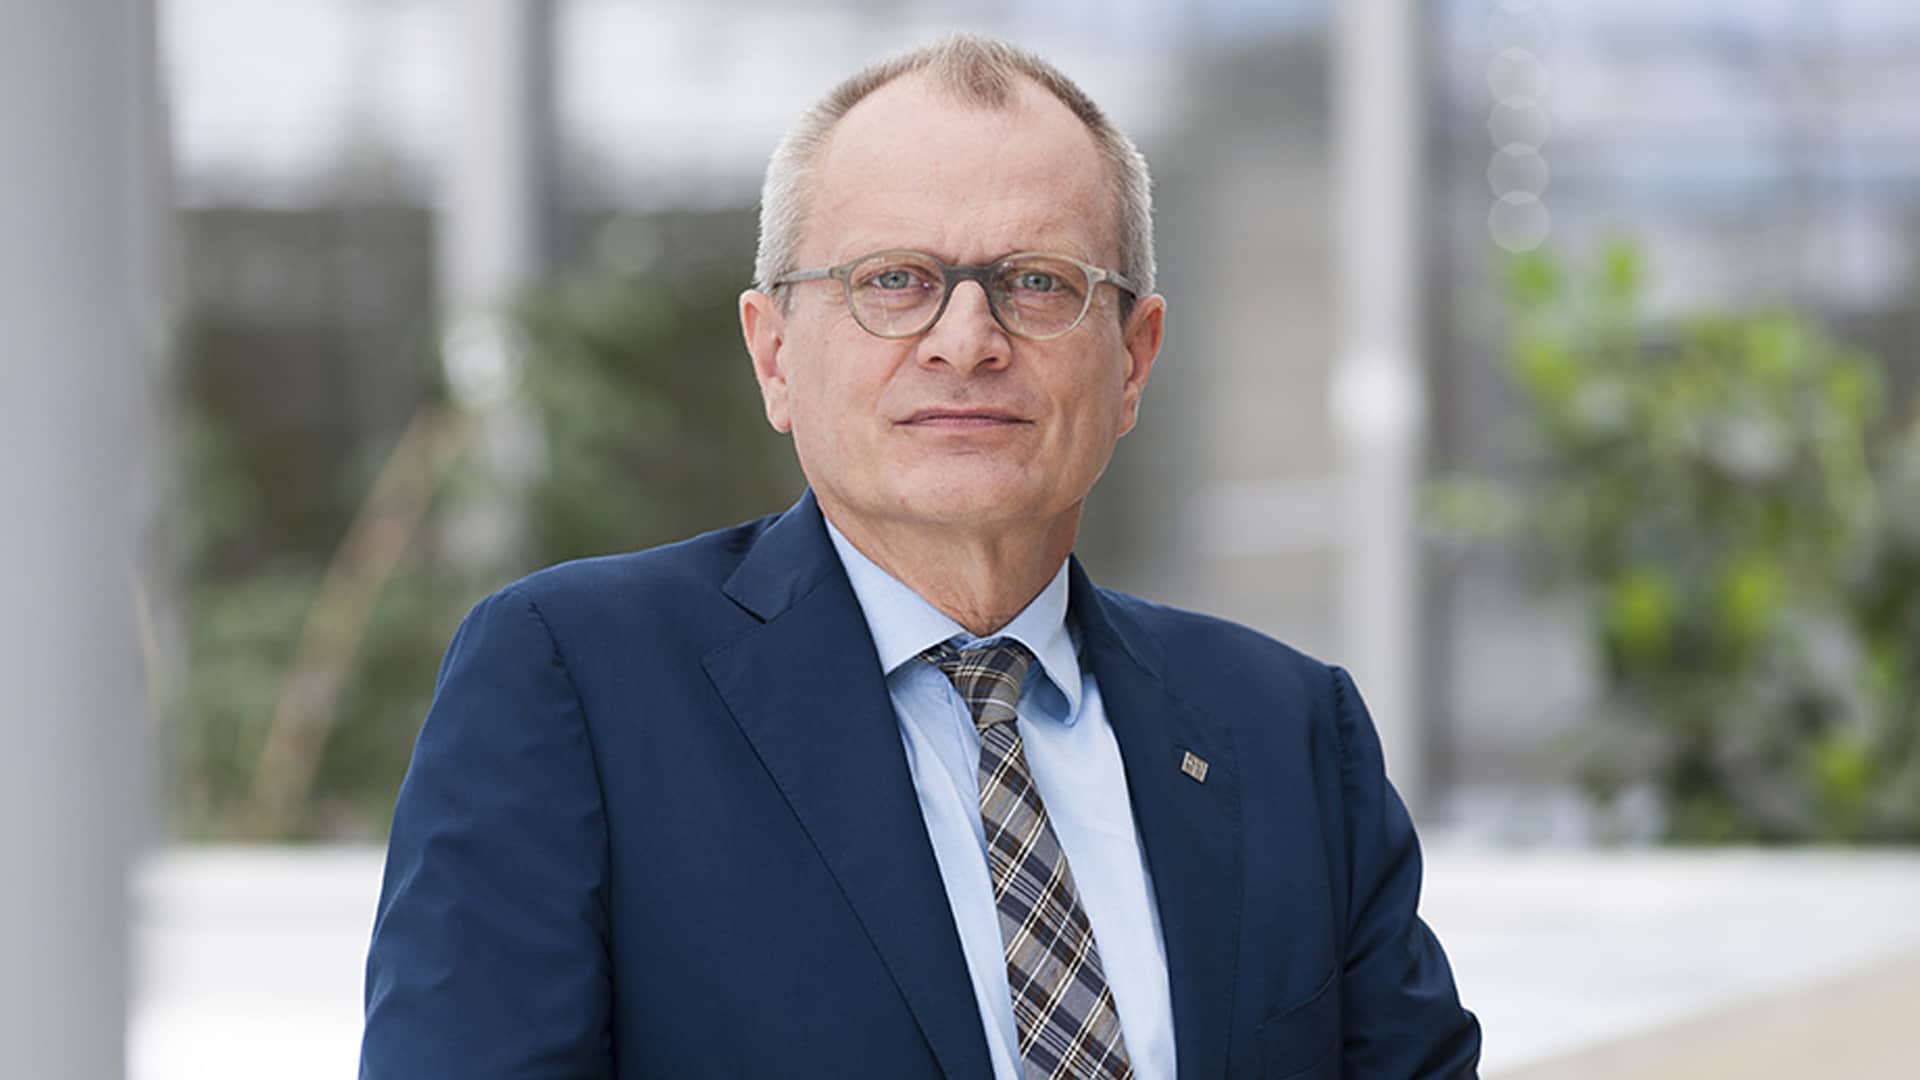 Diakonie-Präsident Ulrich Lilie gehört zu den prominentesten Referenten des 7. Christlichen Gesundheitskongresses im Januar in Kassel